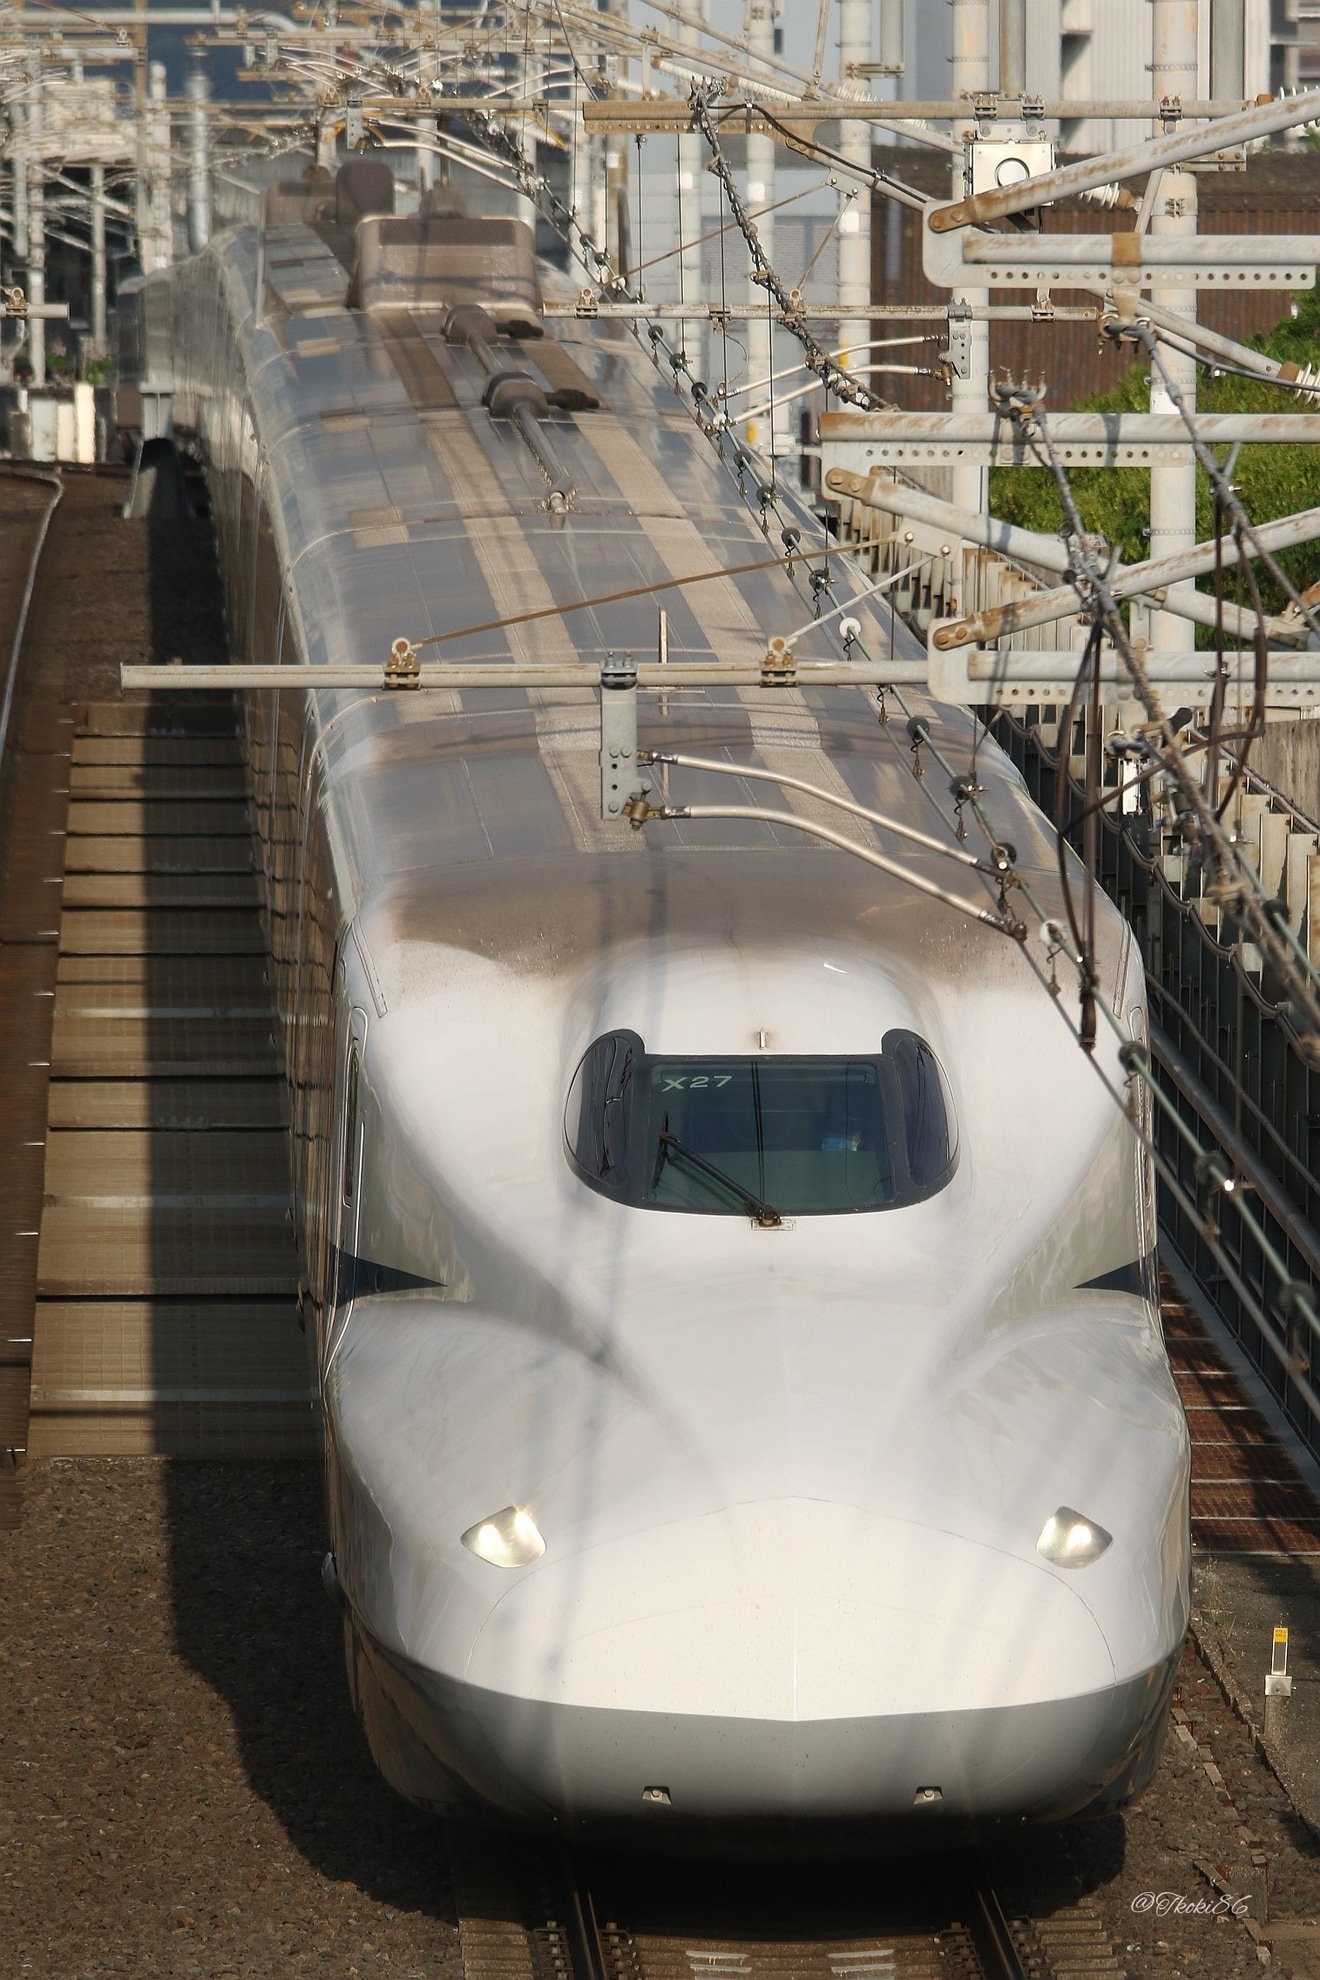 【JR海】N700A(スモールA)X27編成が浜松工場へ廃車回送の拡大写真